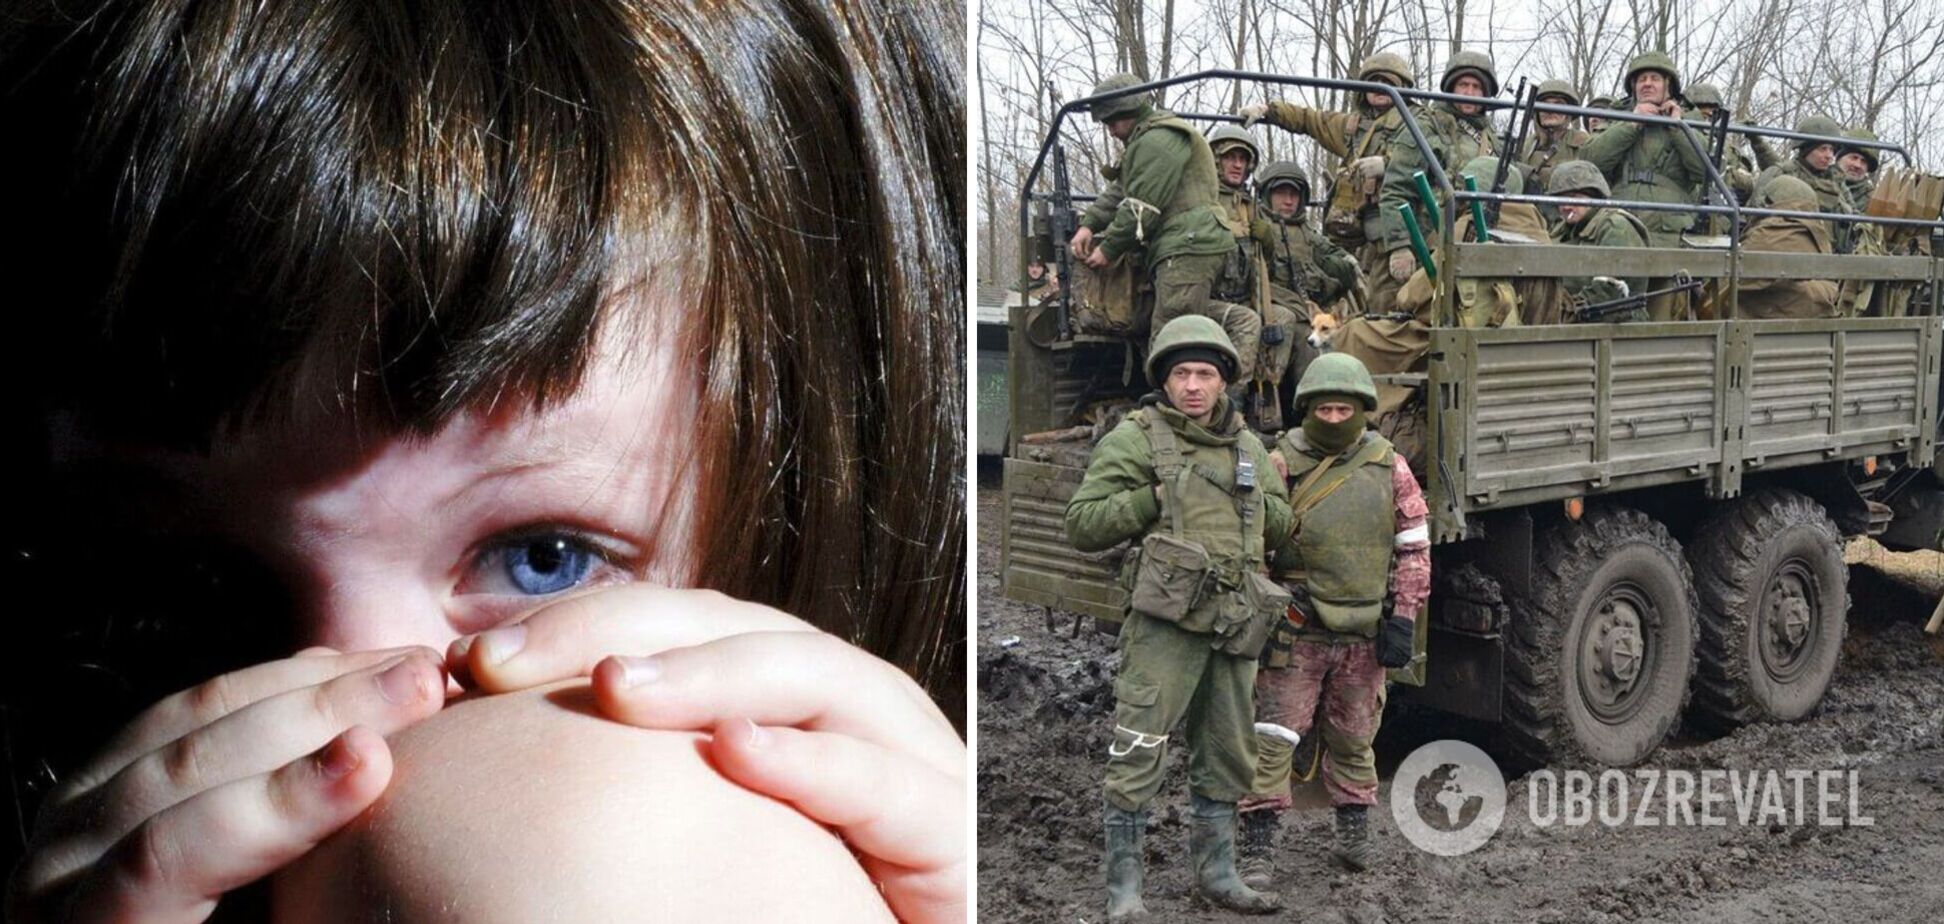 ОГПУ: окупанти зґвалтували в Україні 13 дітей, найменшій жертві – 4 роки